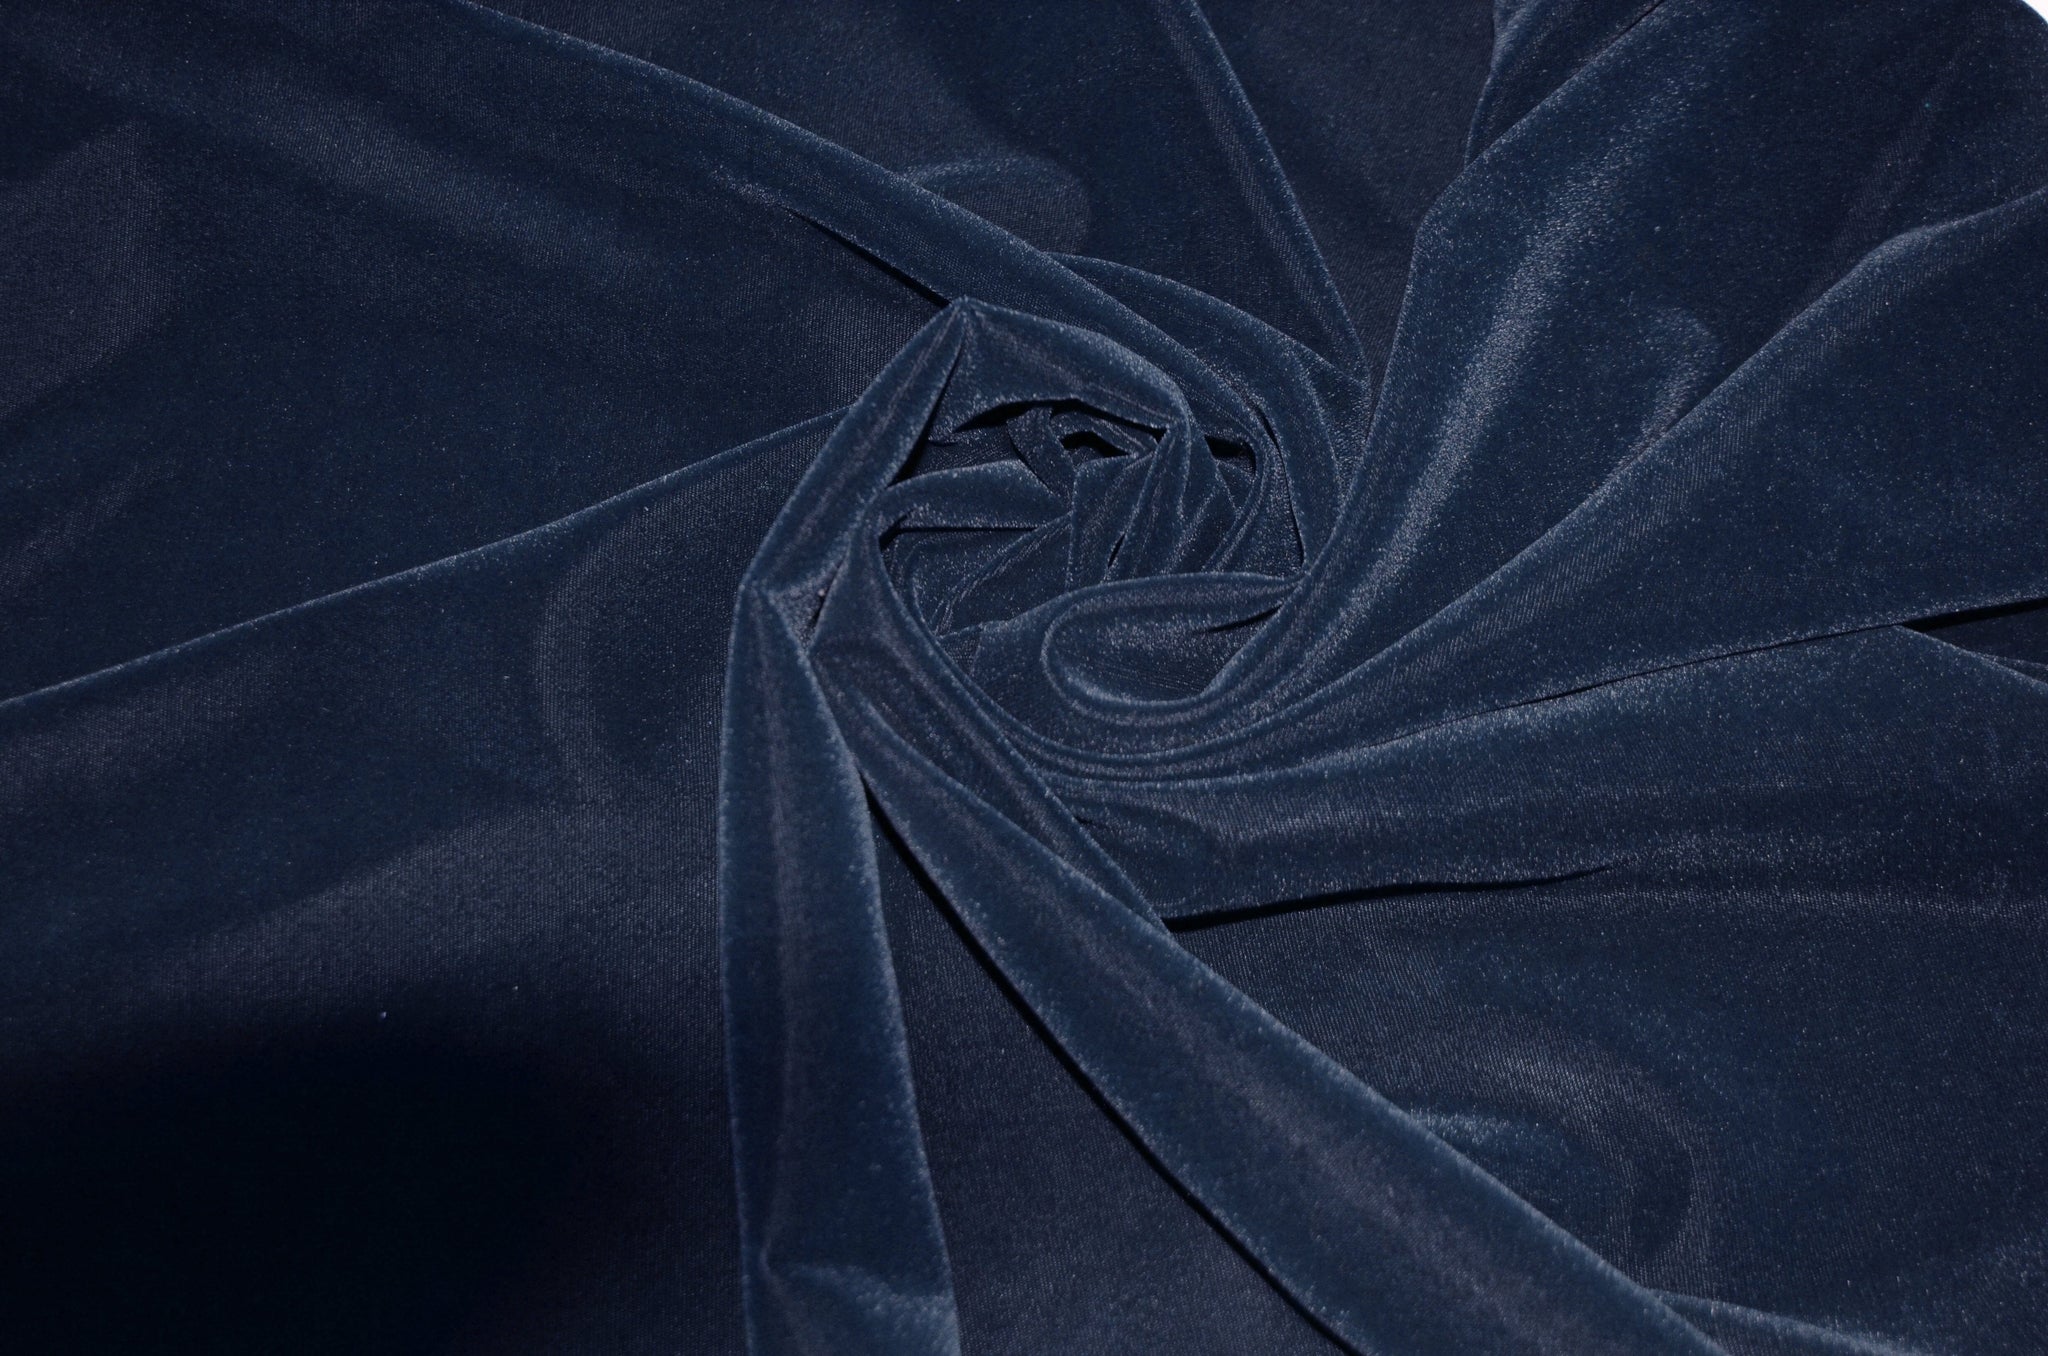 Velvet Clothing Fabric, Korean Velvet Fabric